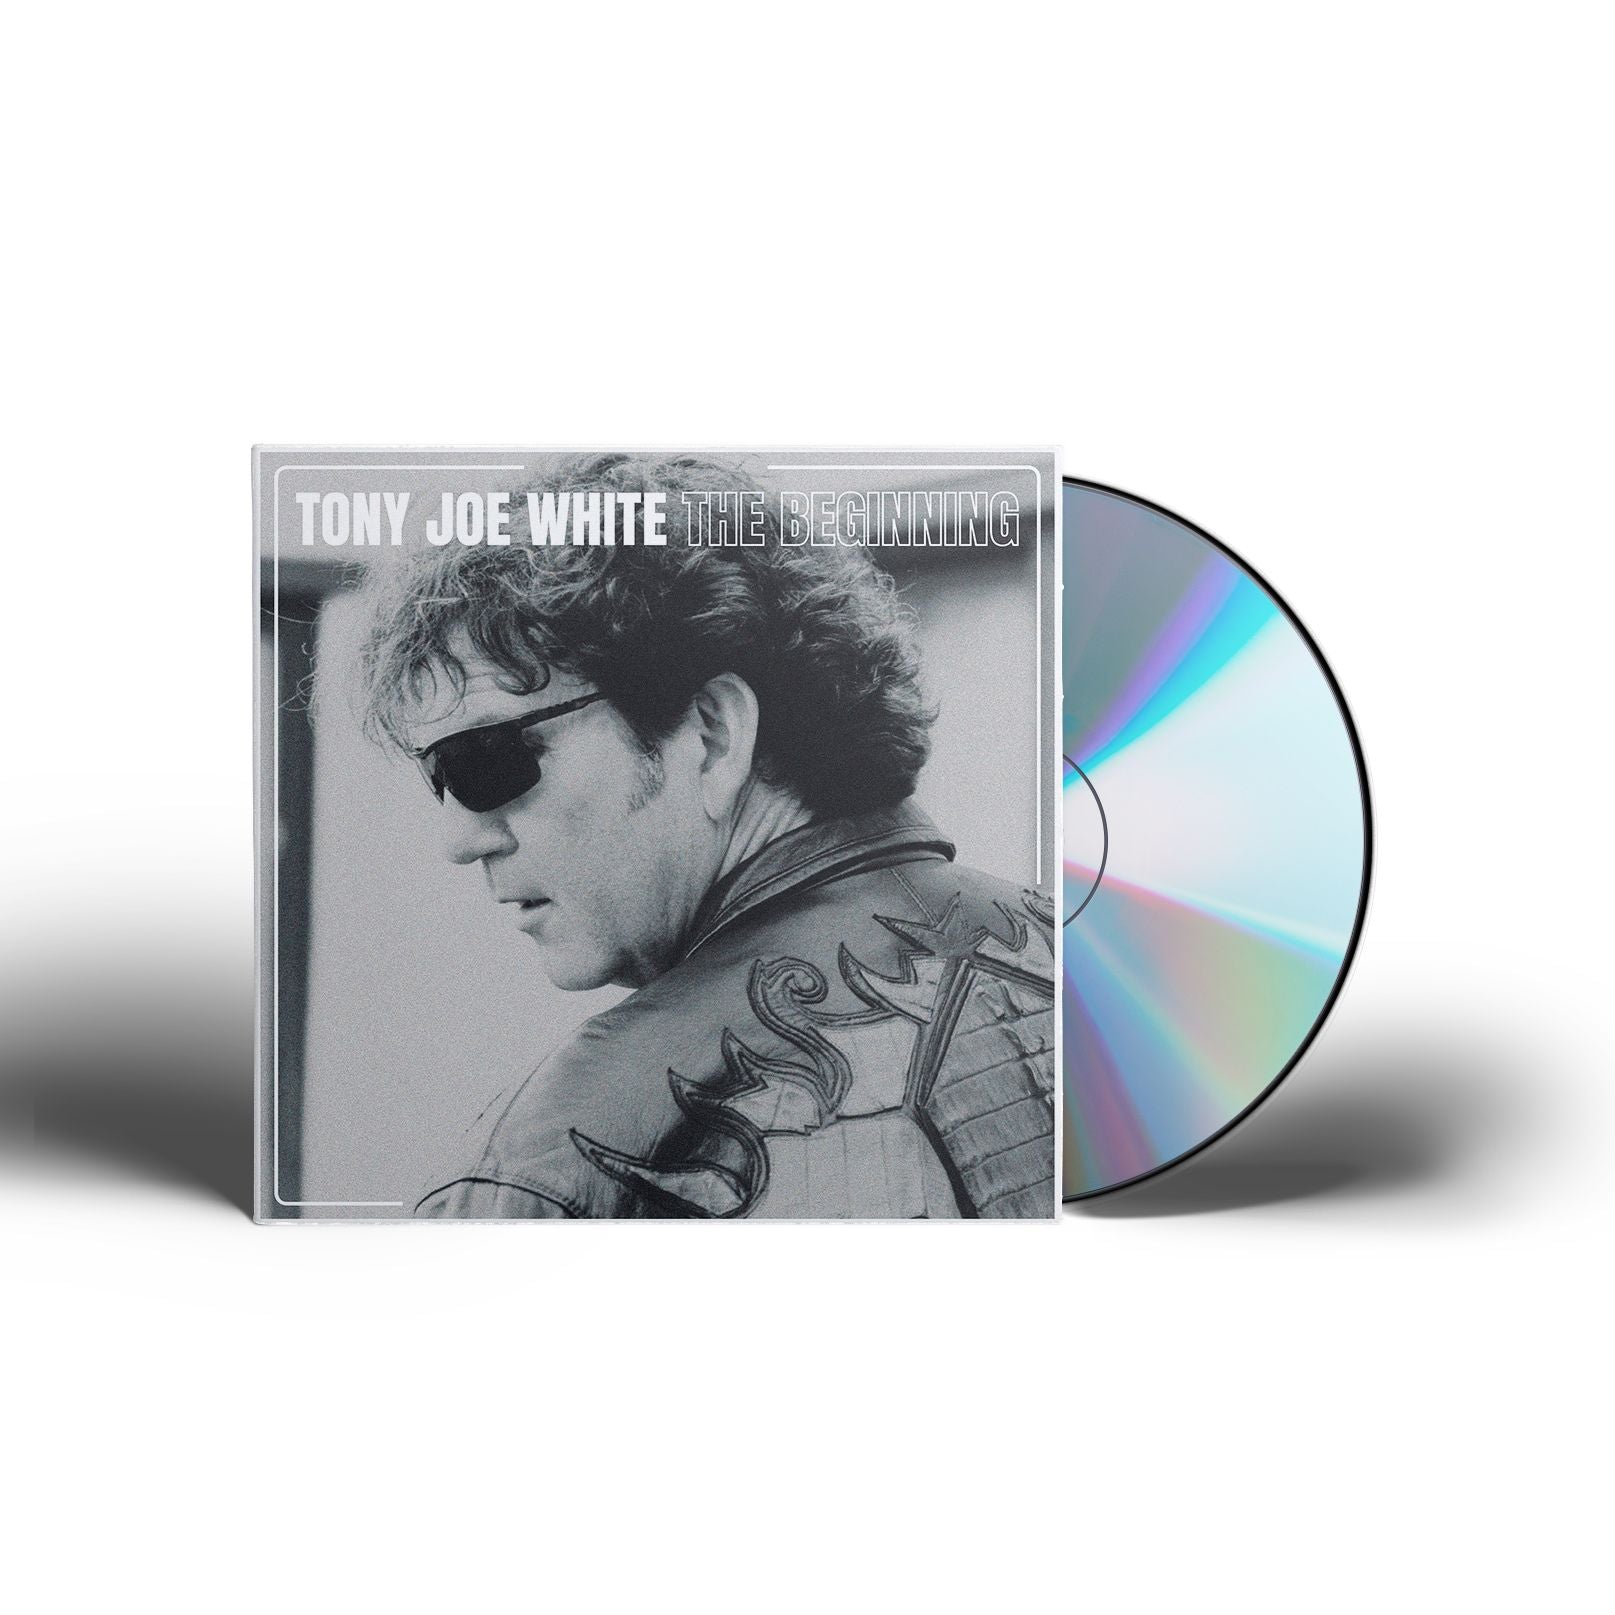 Tony Joe White - The Beginning [CD]